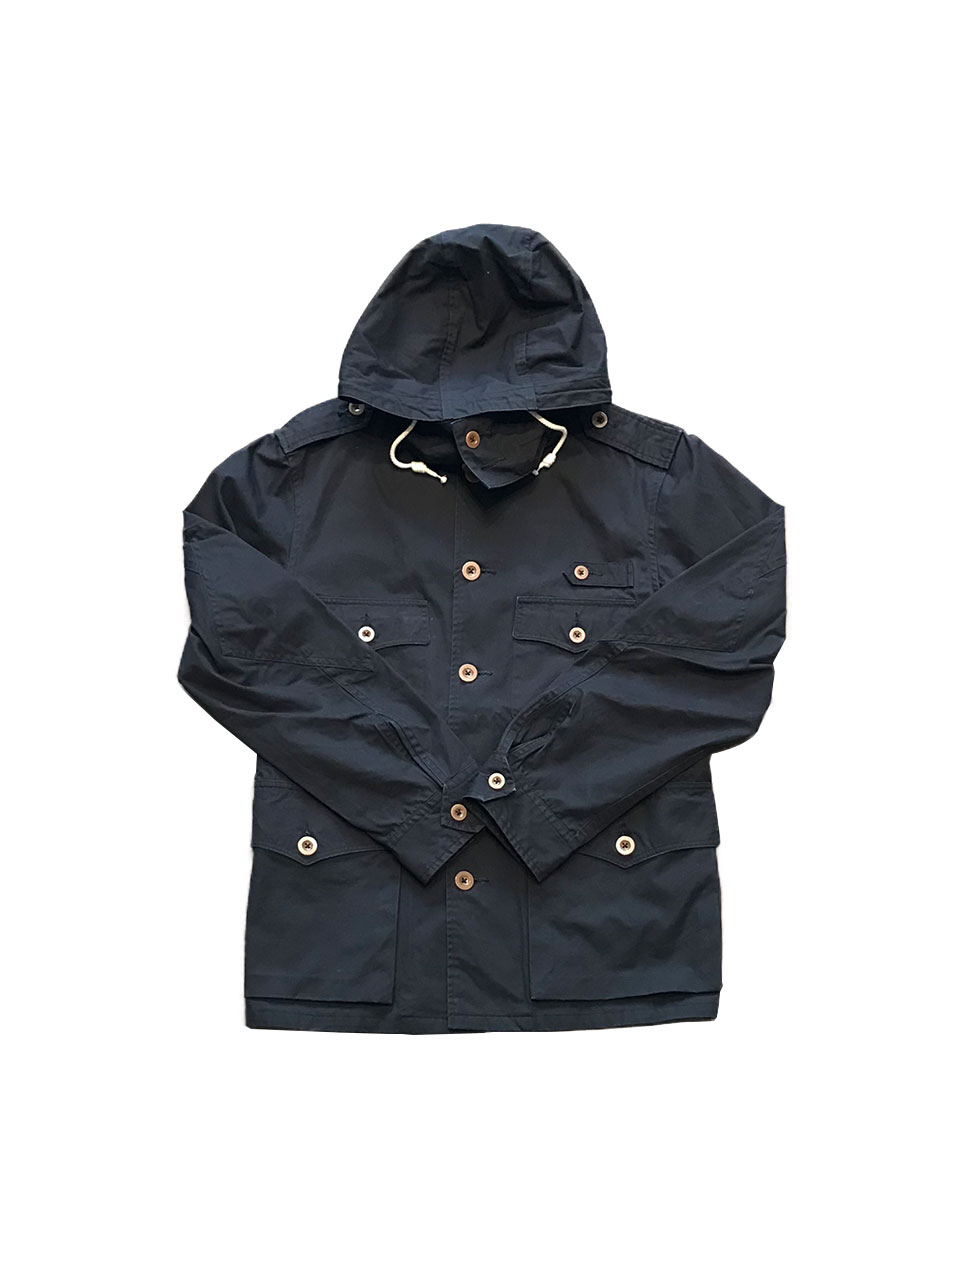 [빈티지] A vontade havy hooded jacket ( 95 / 2203-PV-04)